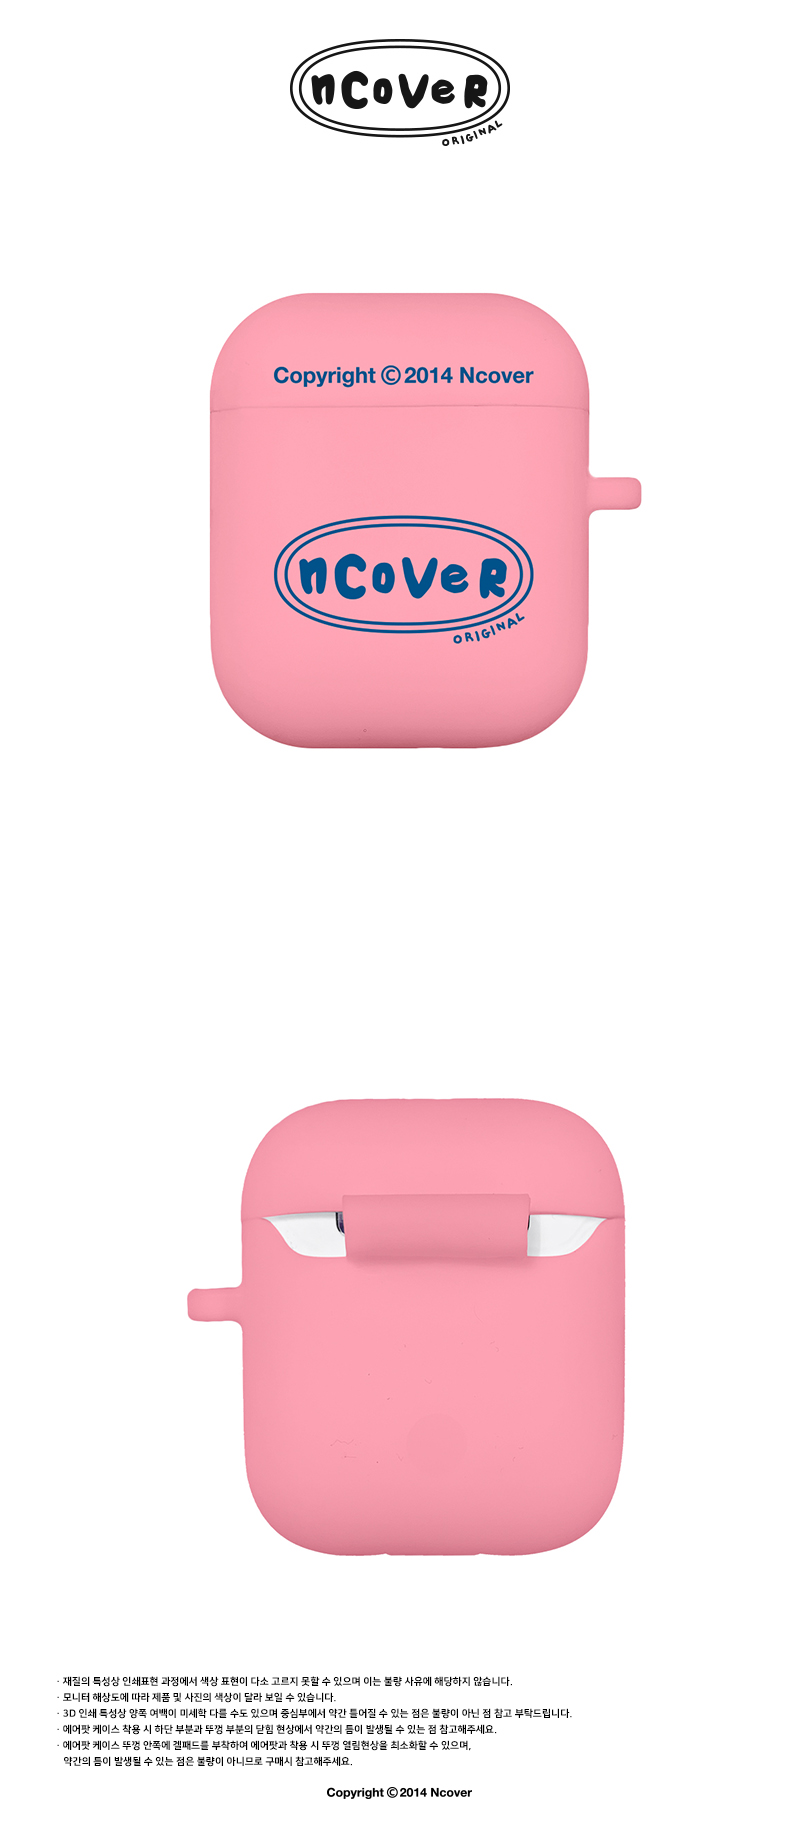  [N]Twentys original case-pink(airpods)  19,000원 - 바이인터내셔널주식회사 디지털, 이어폰/헤드폰, 이어폰/헤드폰 액세서리, 에어팟/에어팟프로 케이스 바보사랑  [N]Twentys original case-pink(airpods)  19,000원 - 바이인터내셔널주식회사 디지털, 이어폰/헤드폰, 이어폰/헤드폰 액세서리, 에어팟/에어팟프로 케이스 바보사랑